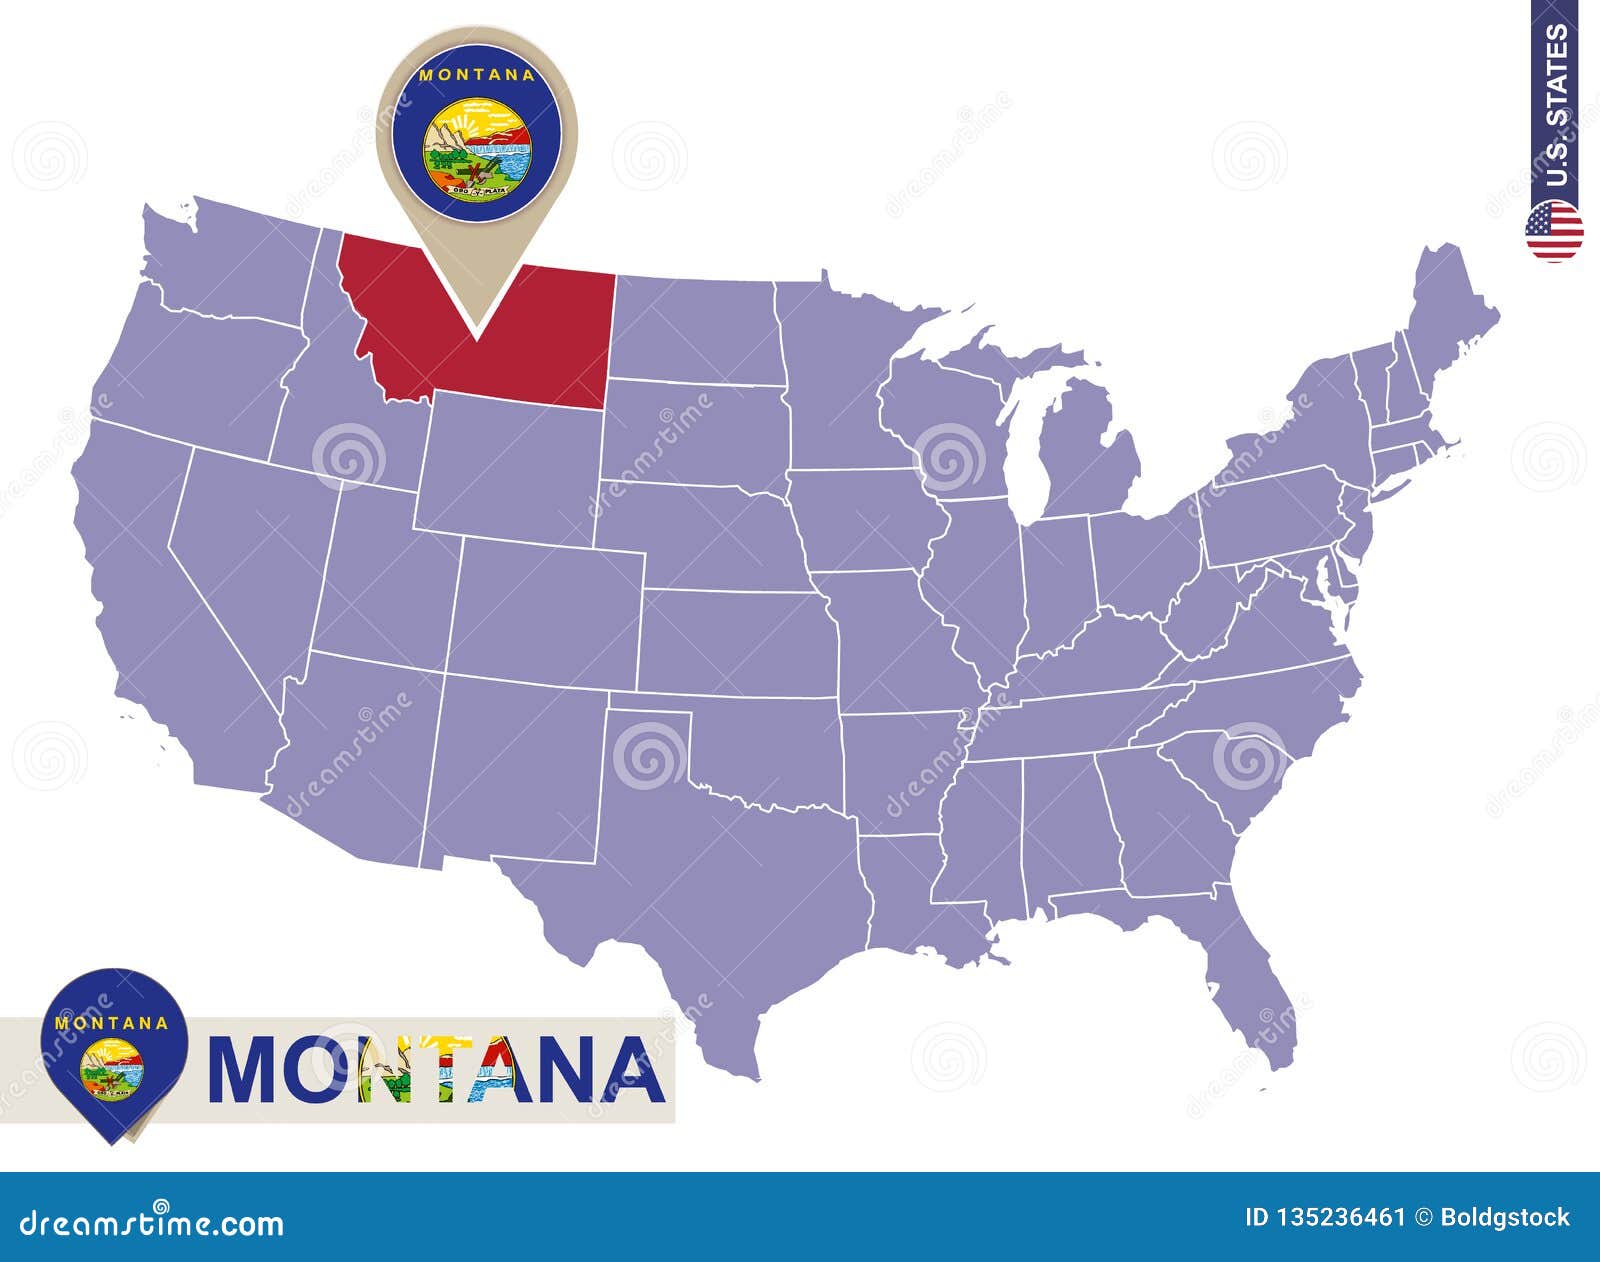 Montana State On Usa Map Montana Flag And Map Stock Vector